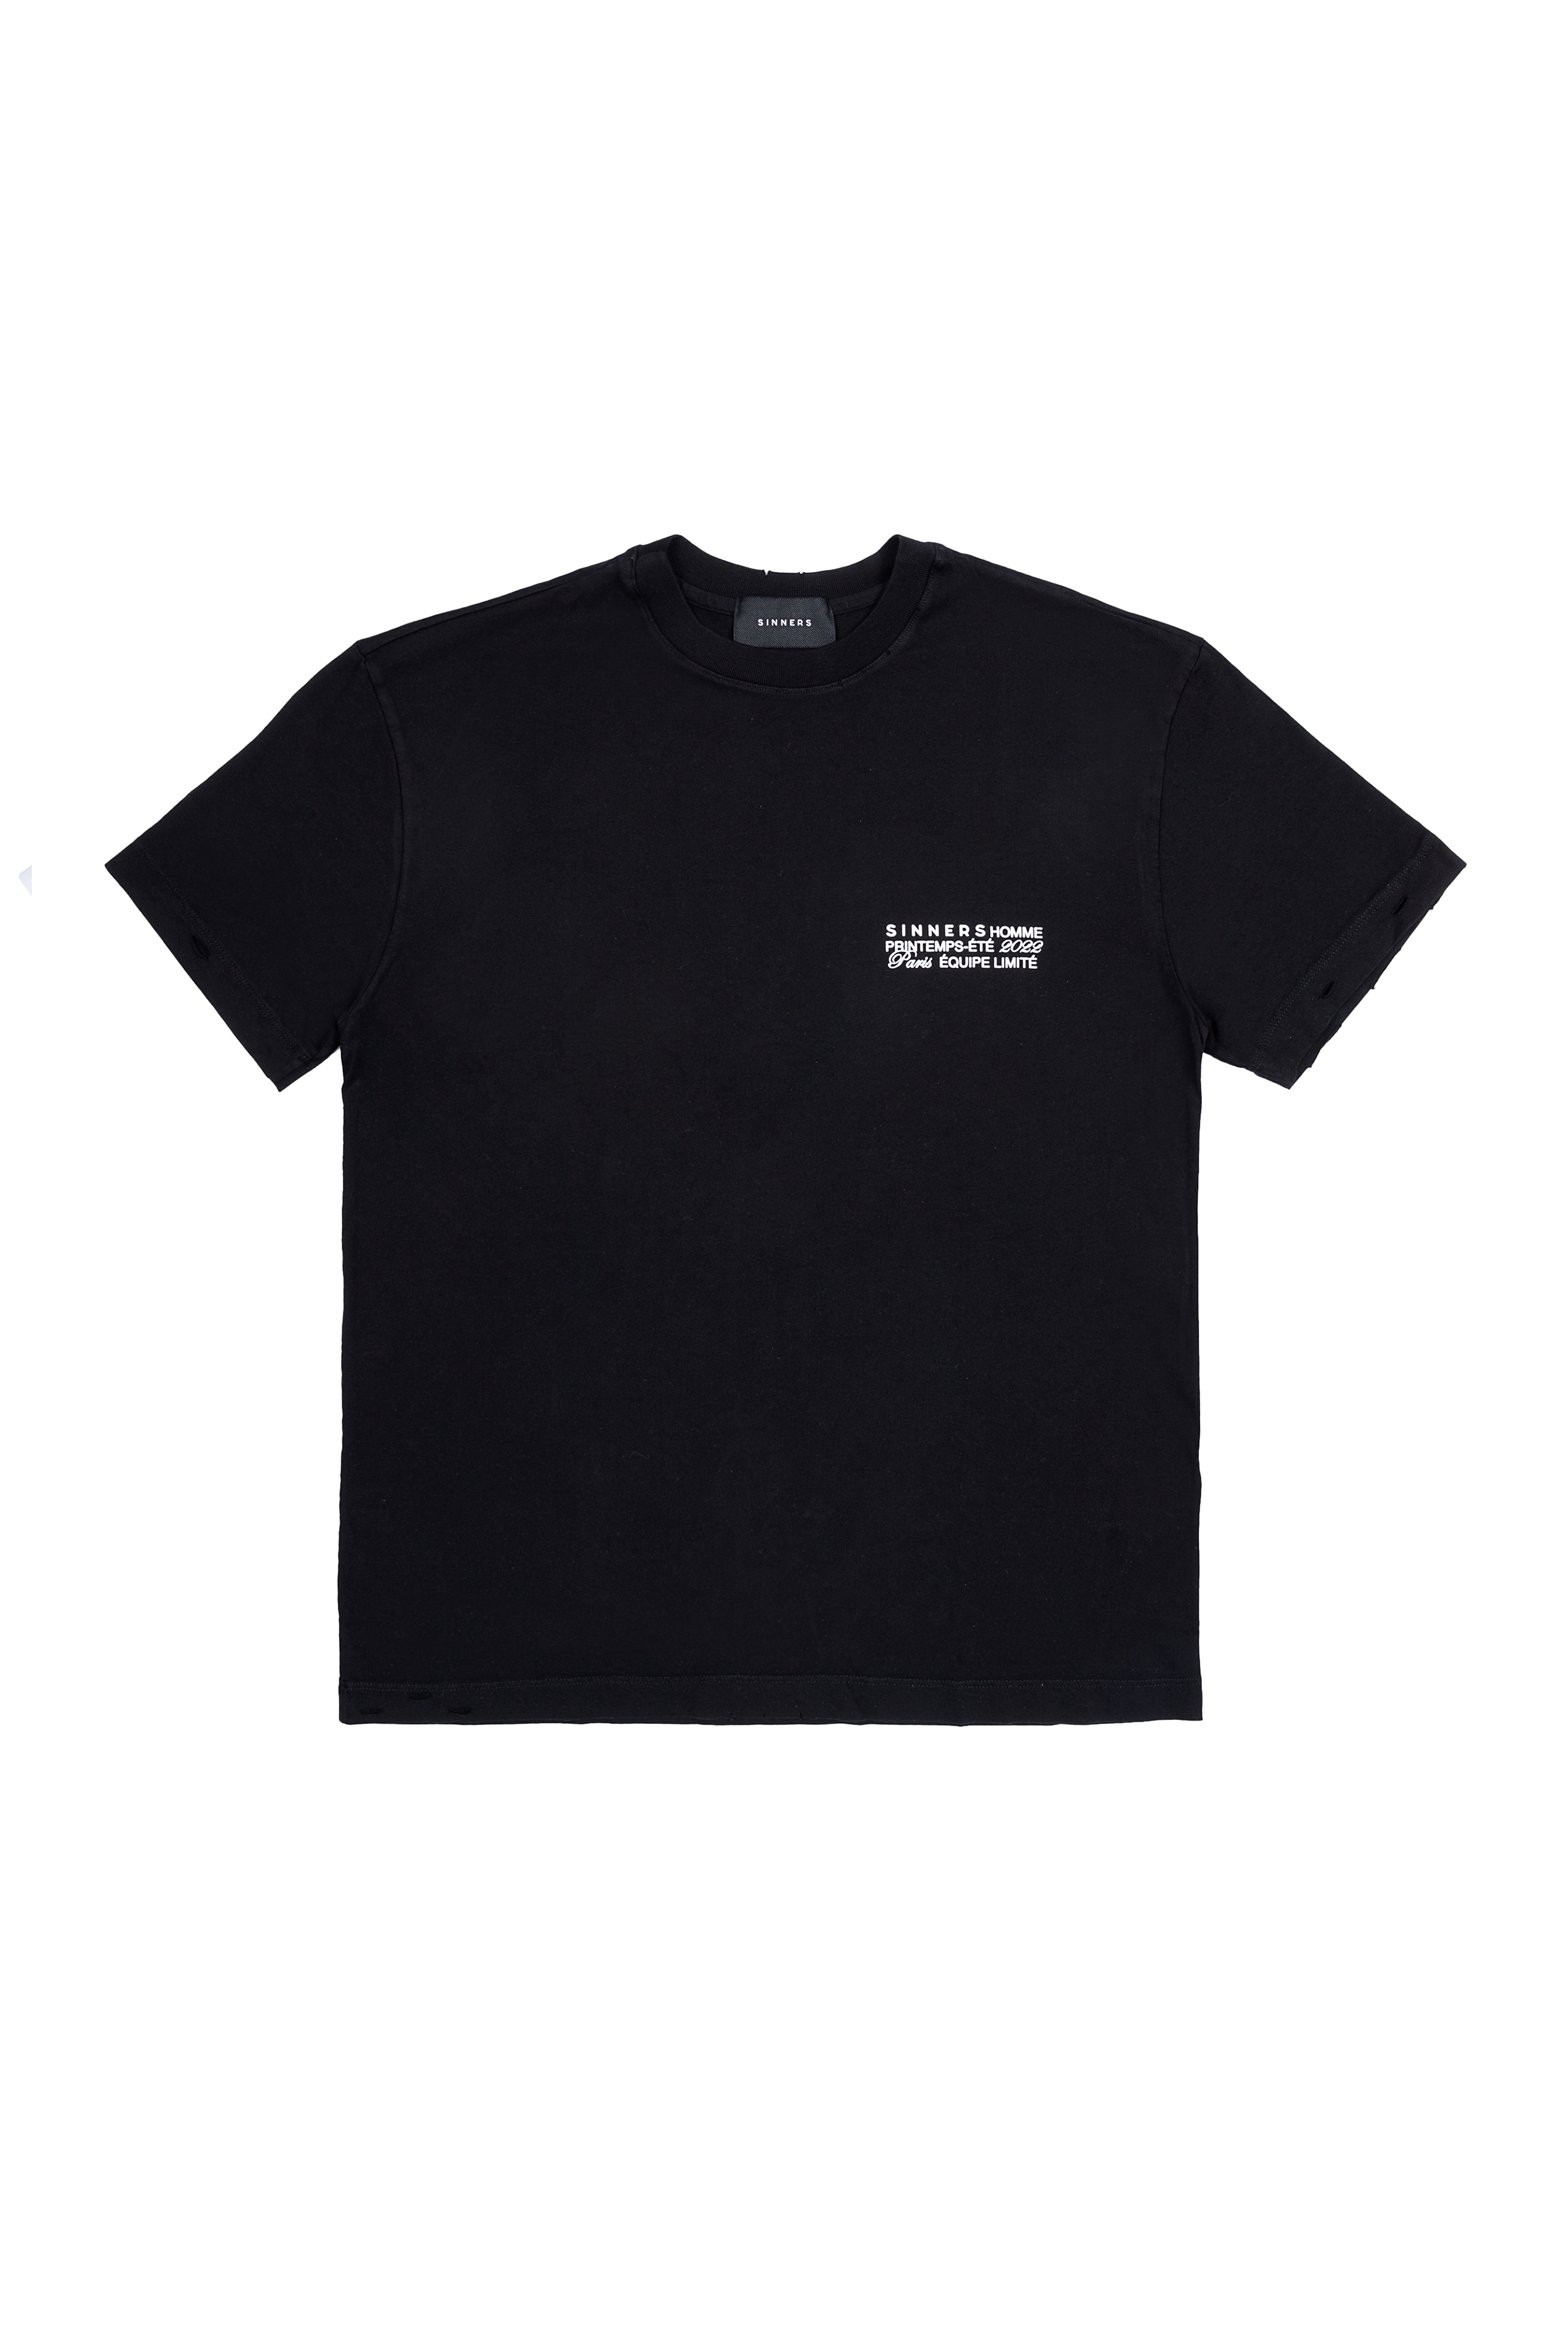 Black T-Shirt for Women